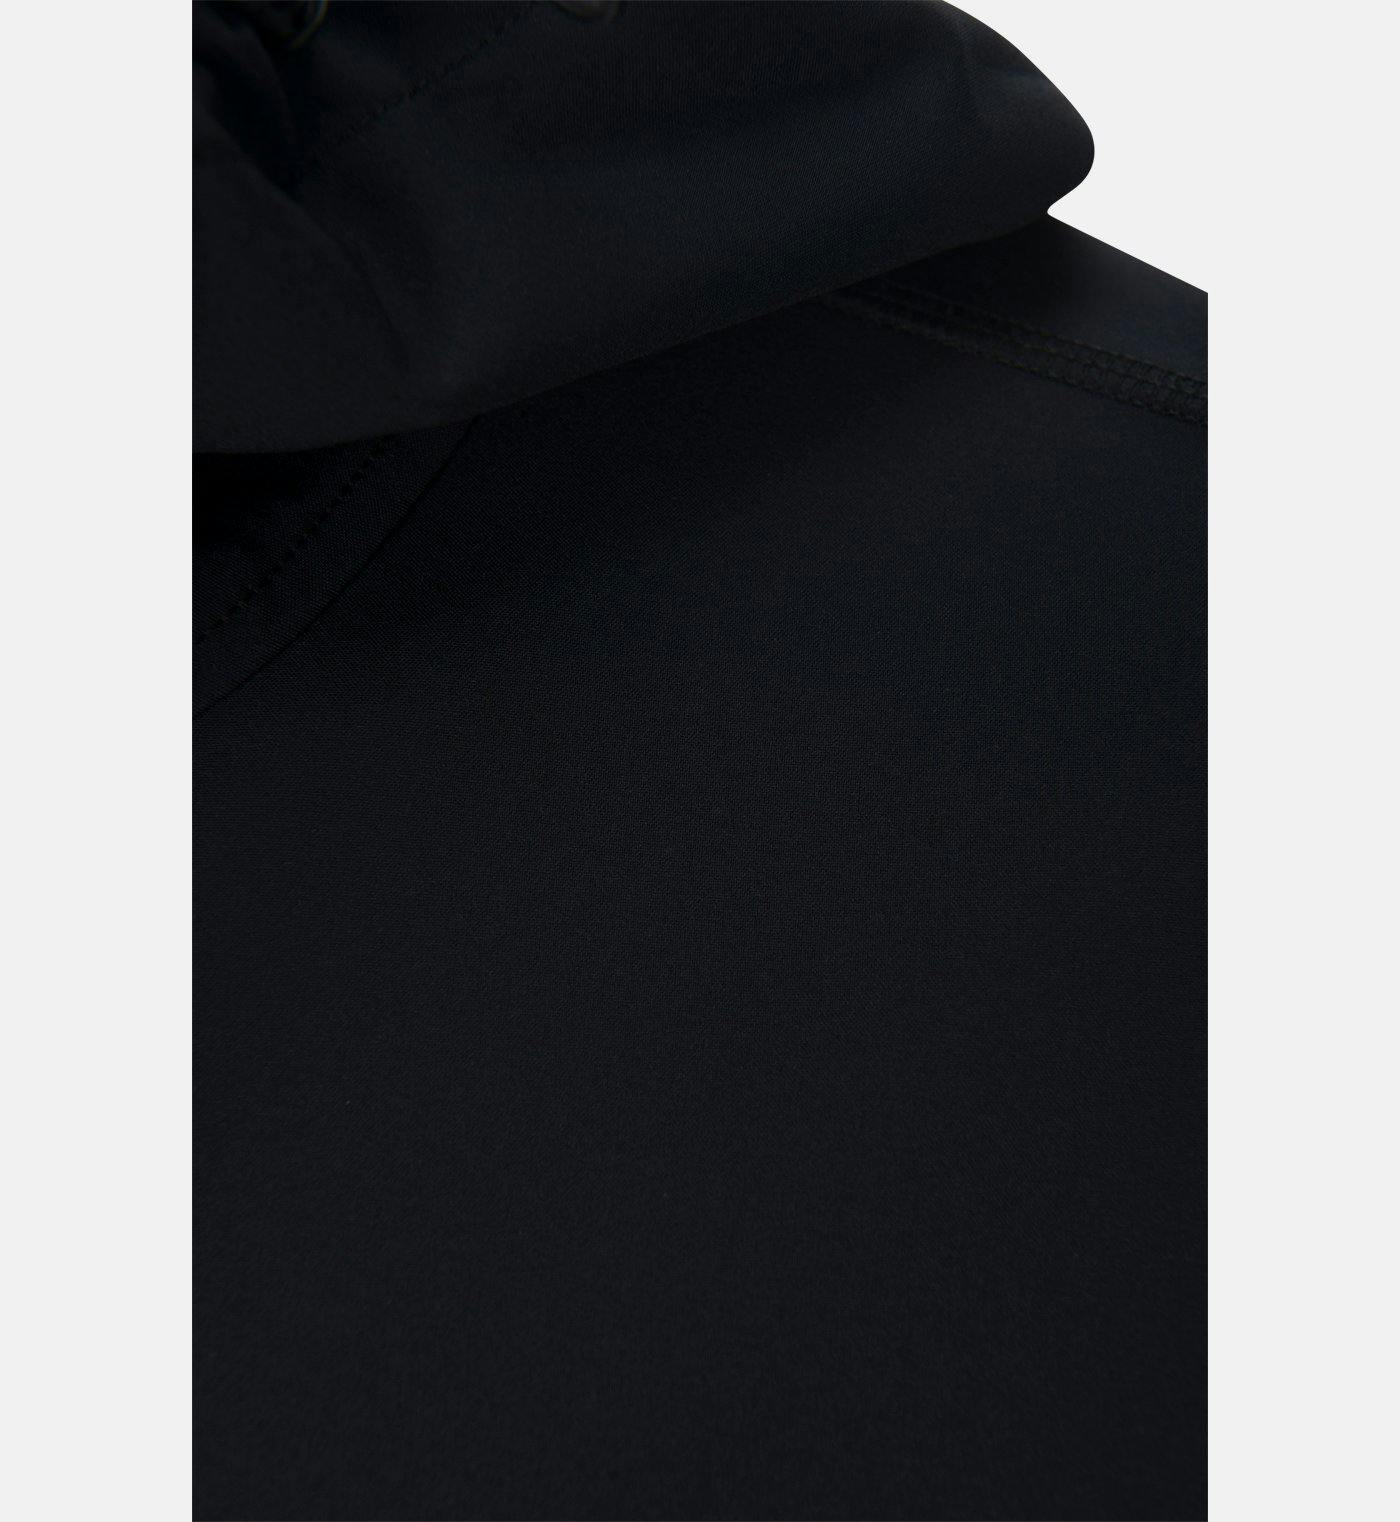 Numéro de l'image de la galerie de produits 4 pour le produit Blouson en polyester Softshell - Homme